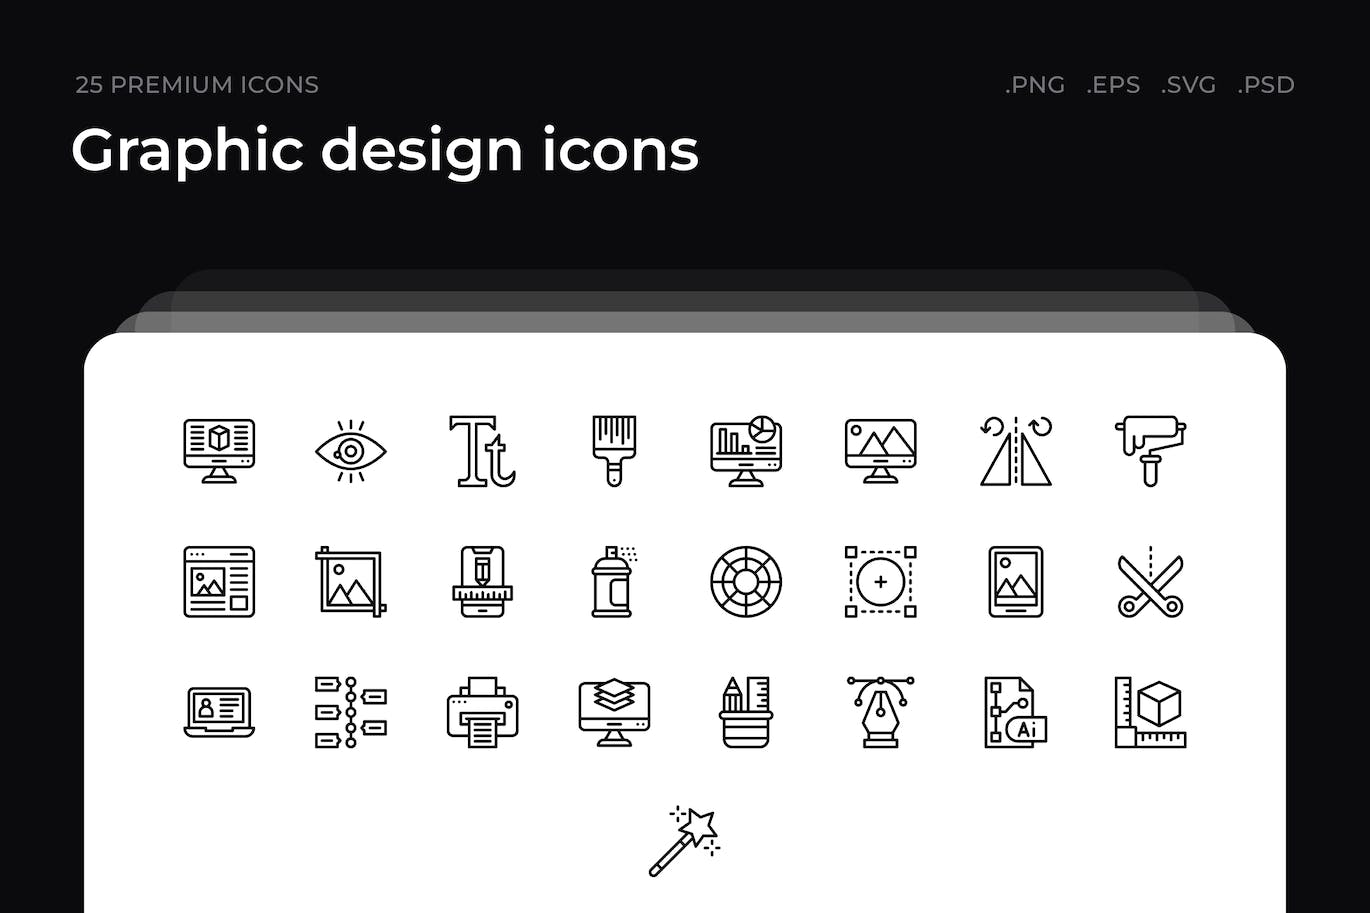 25枚平面设计主题简约线条矢量图标 Graphic design icons 图标素材 第1张